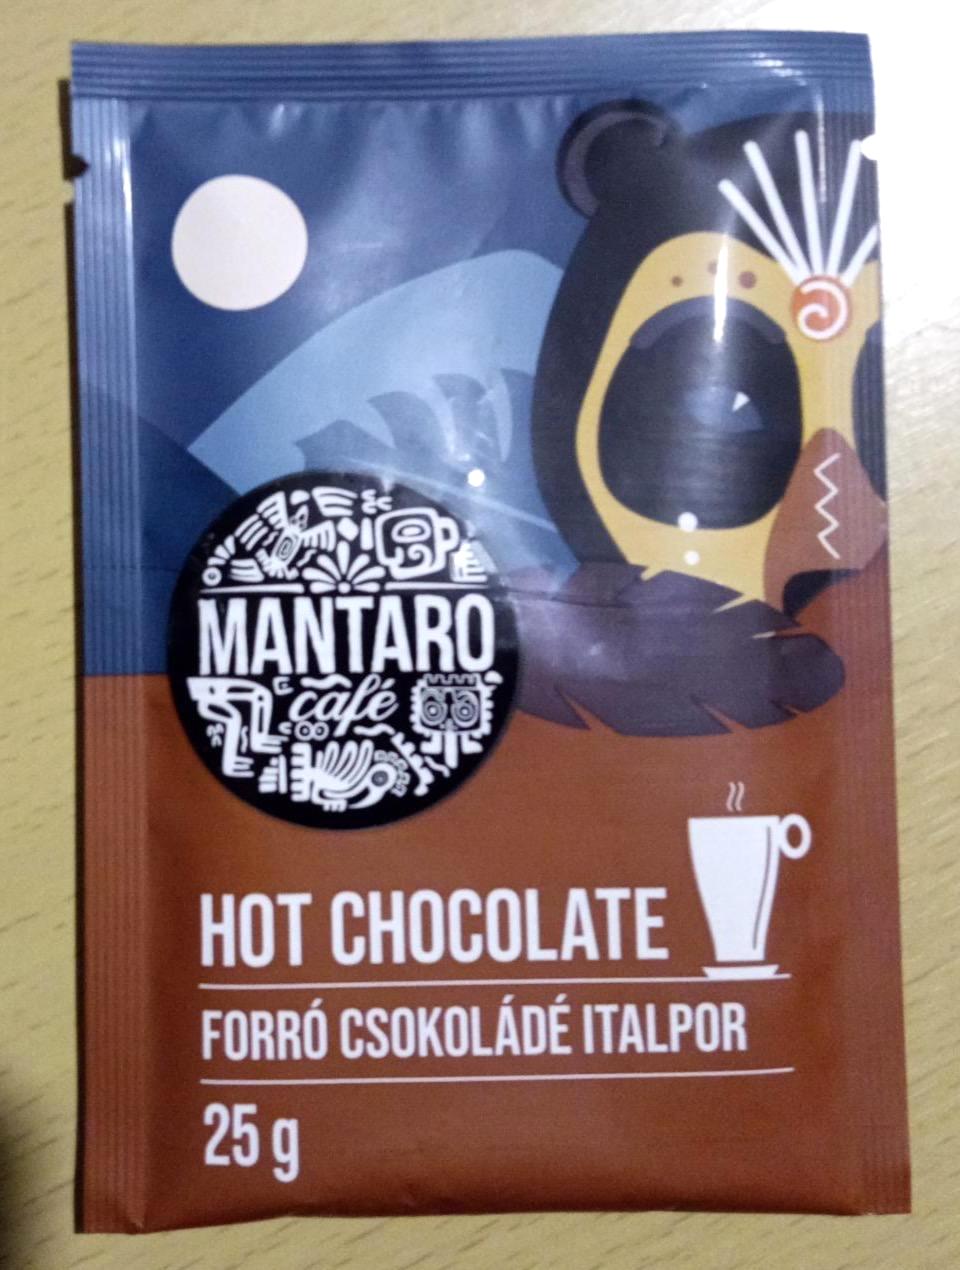 Képek - Forró csokoládé italpor Mantaro